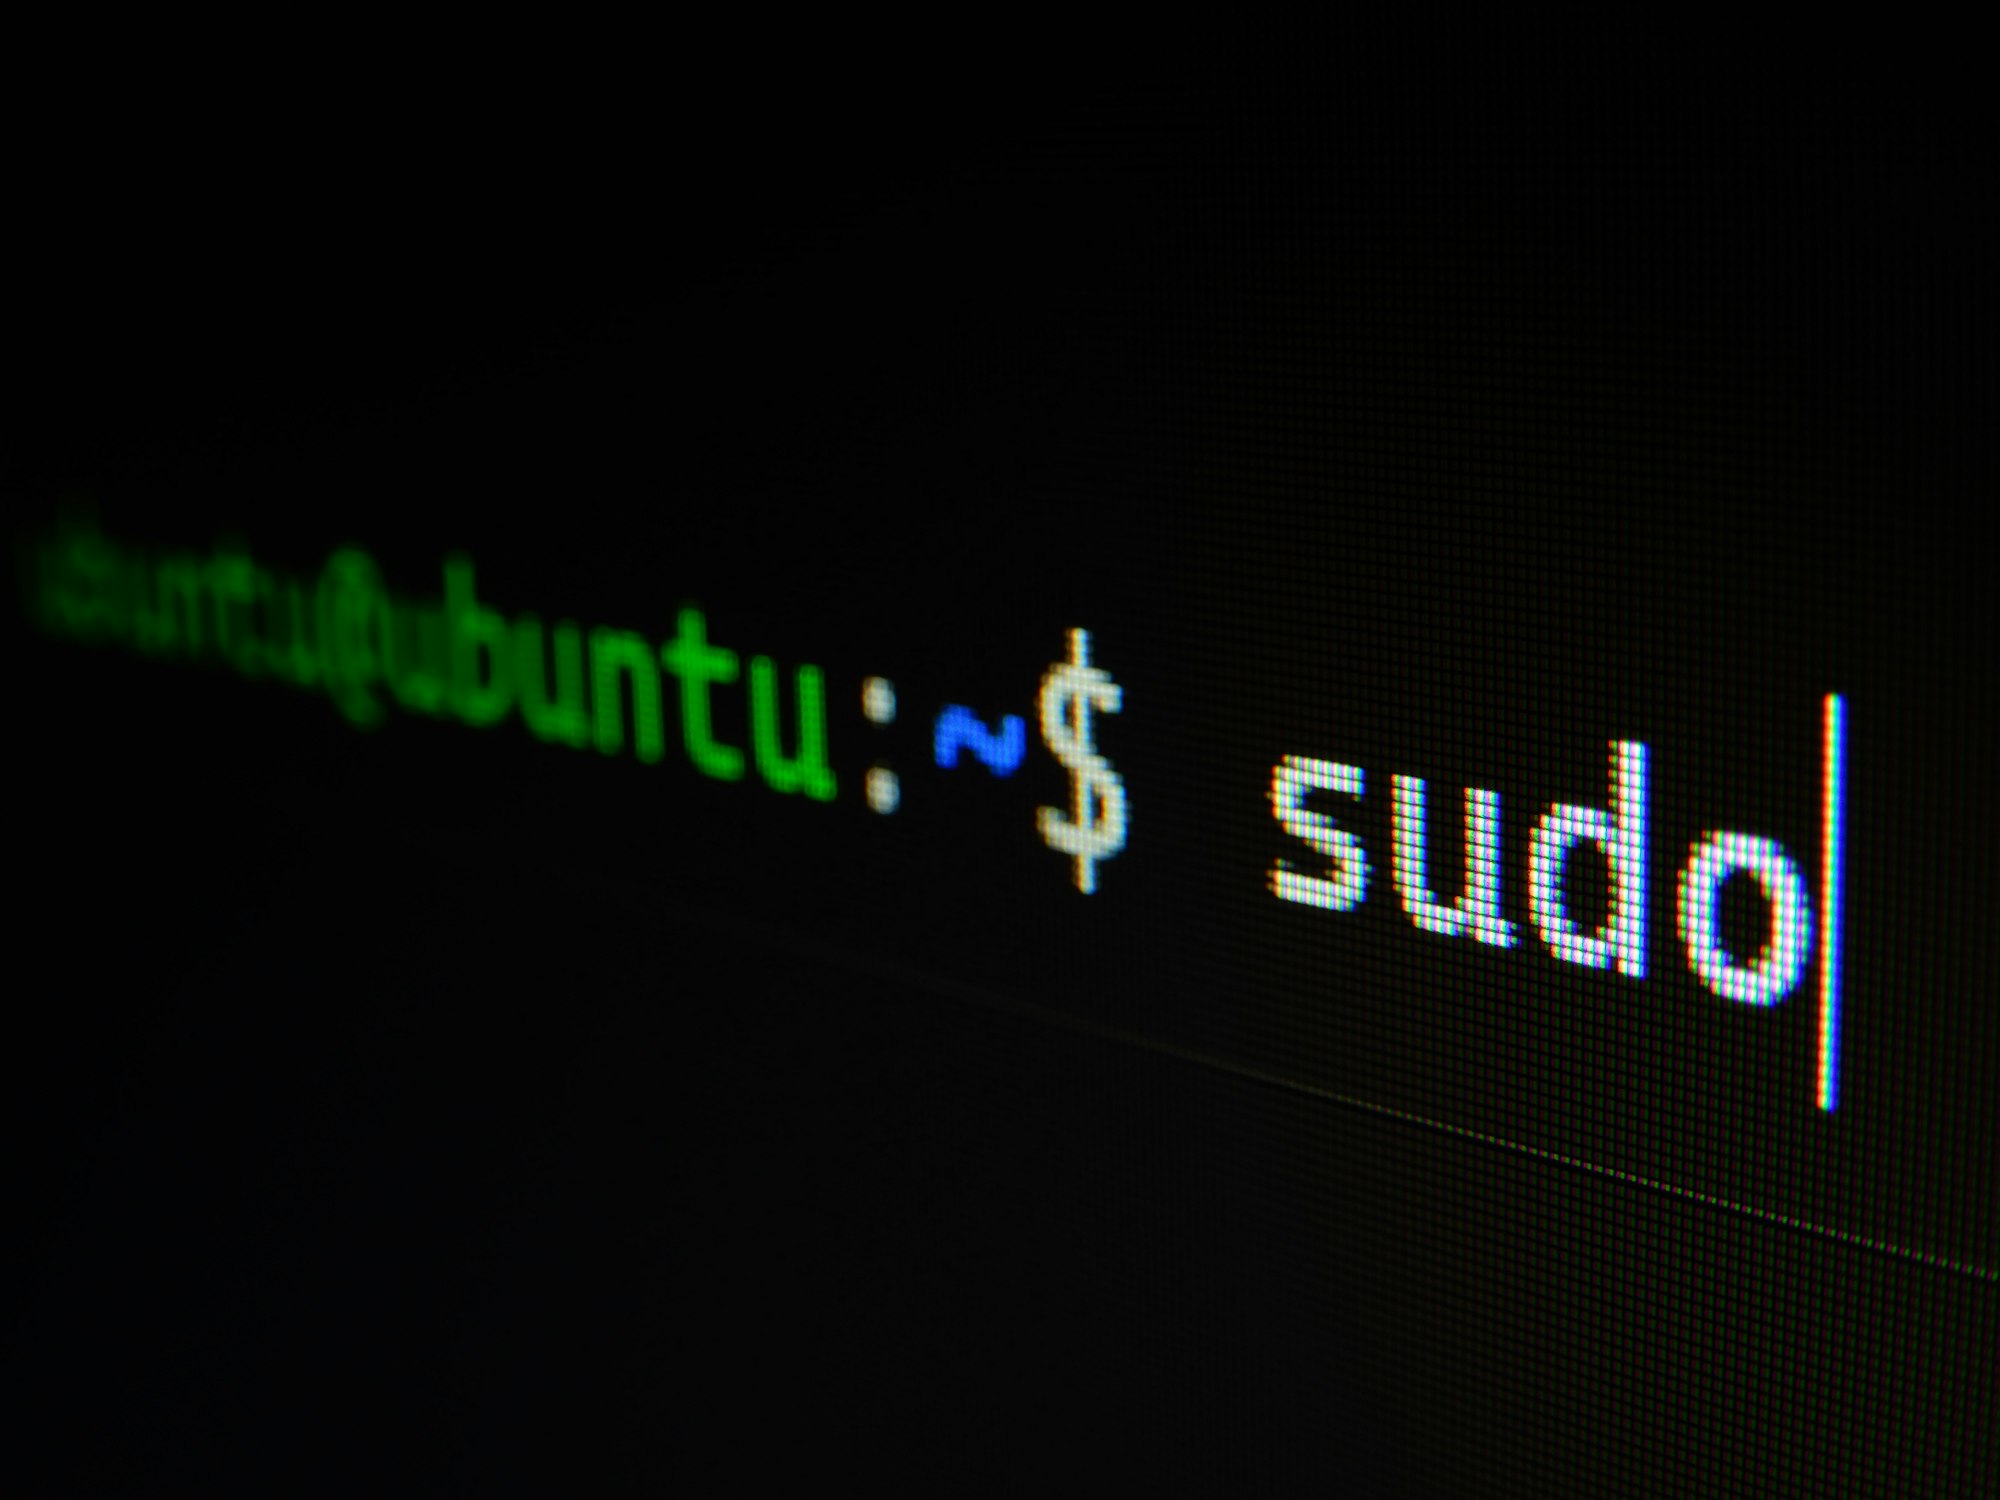 Linux sudo user